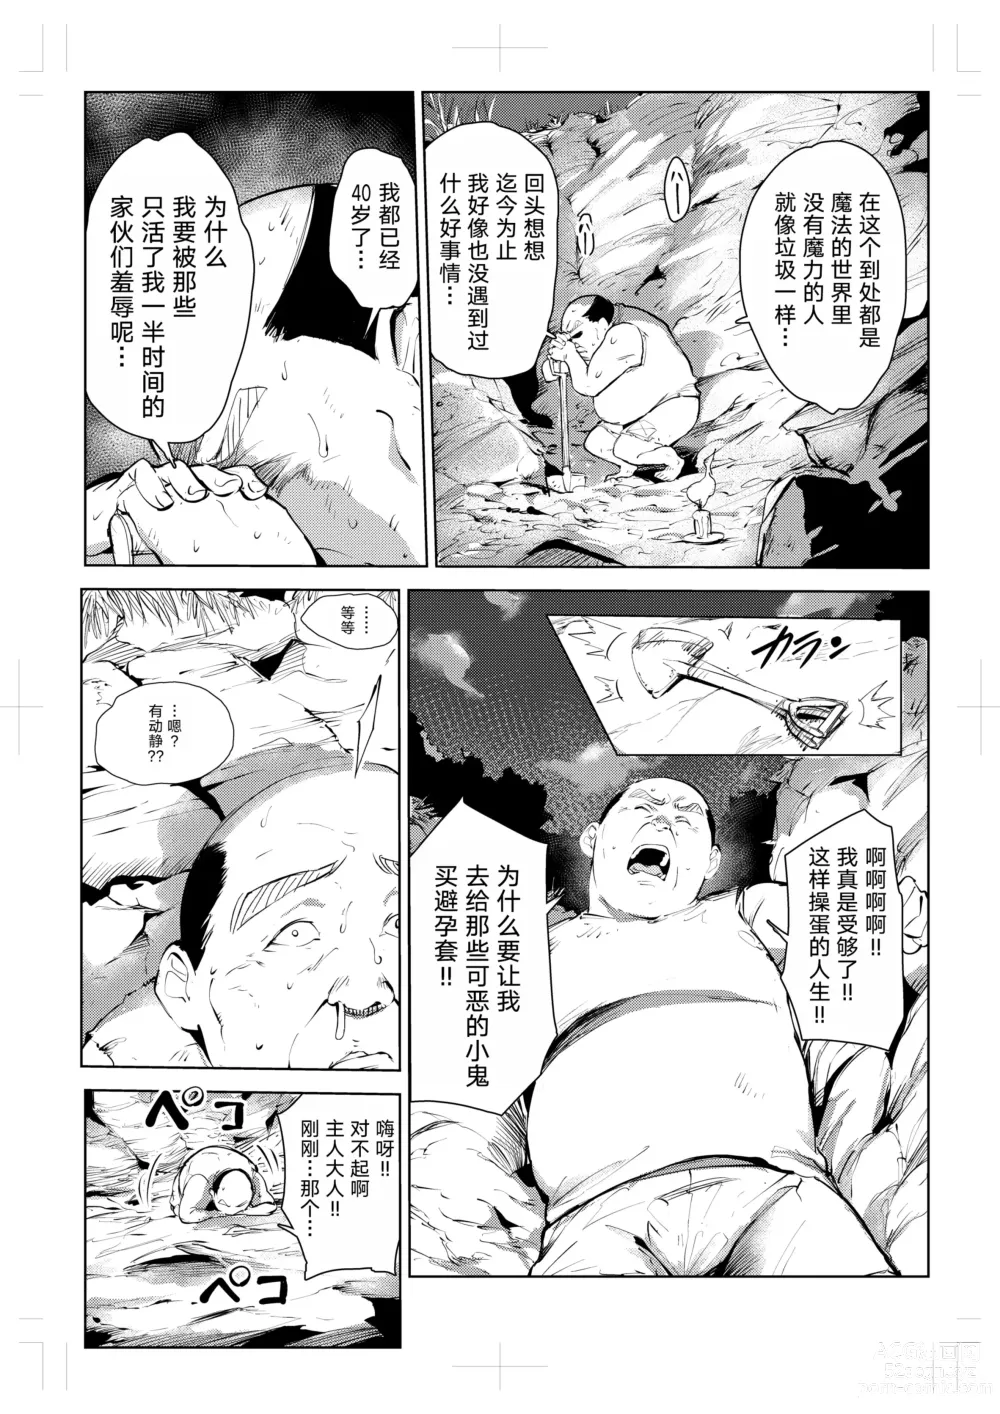 Page 14 of doujinshi 40-sai no Mahoutsukai 0